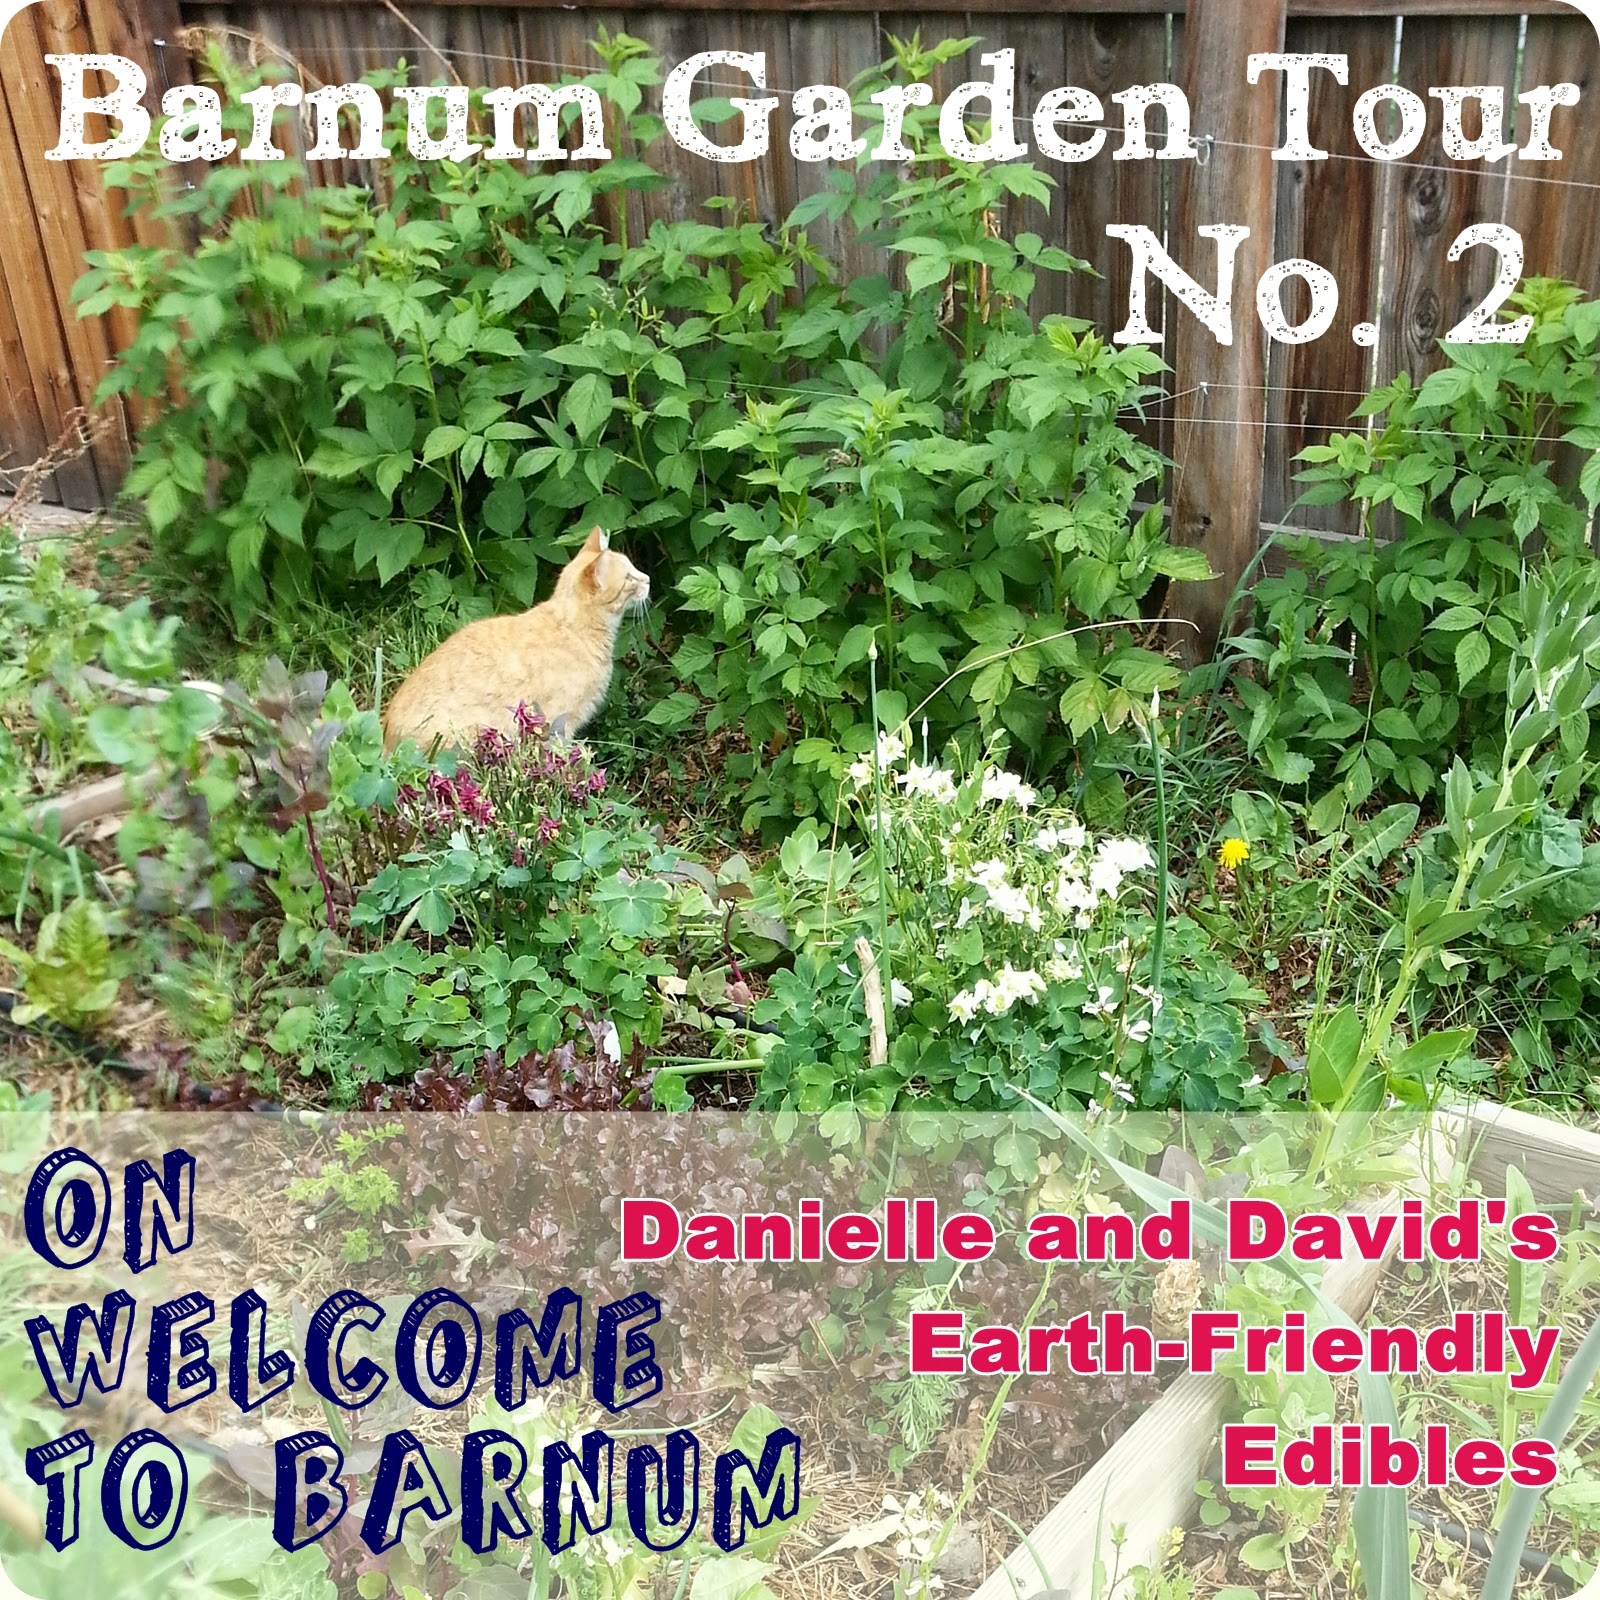 http://welcometobarnum.blogspot.com/2014/06/barnum-garden-tour-danielle-and-davids.html